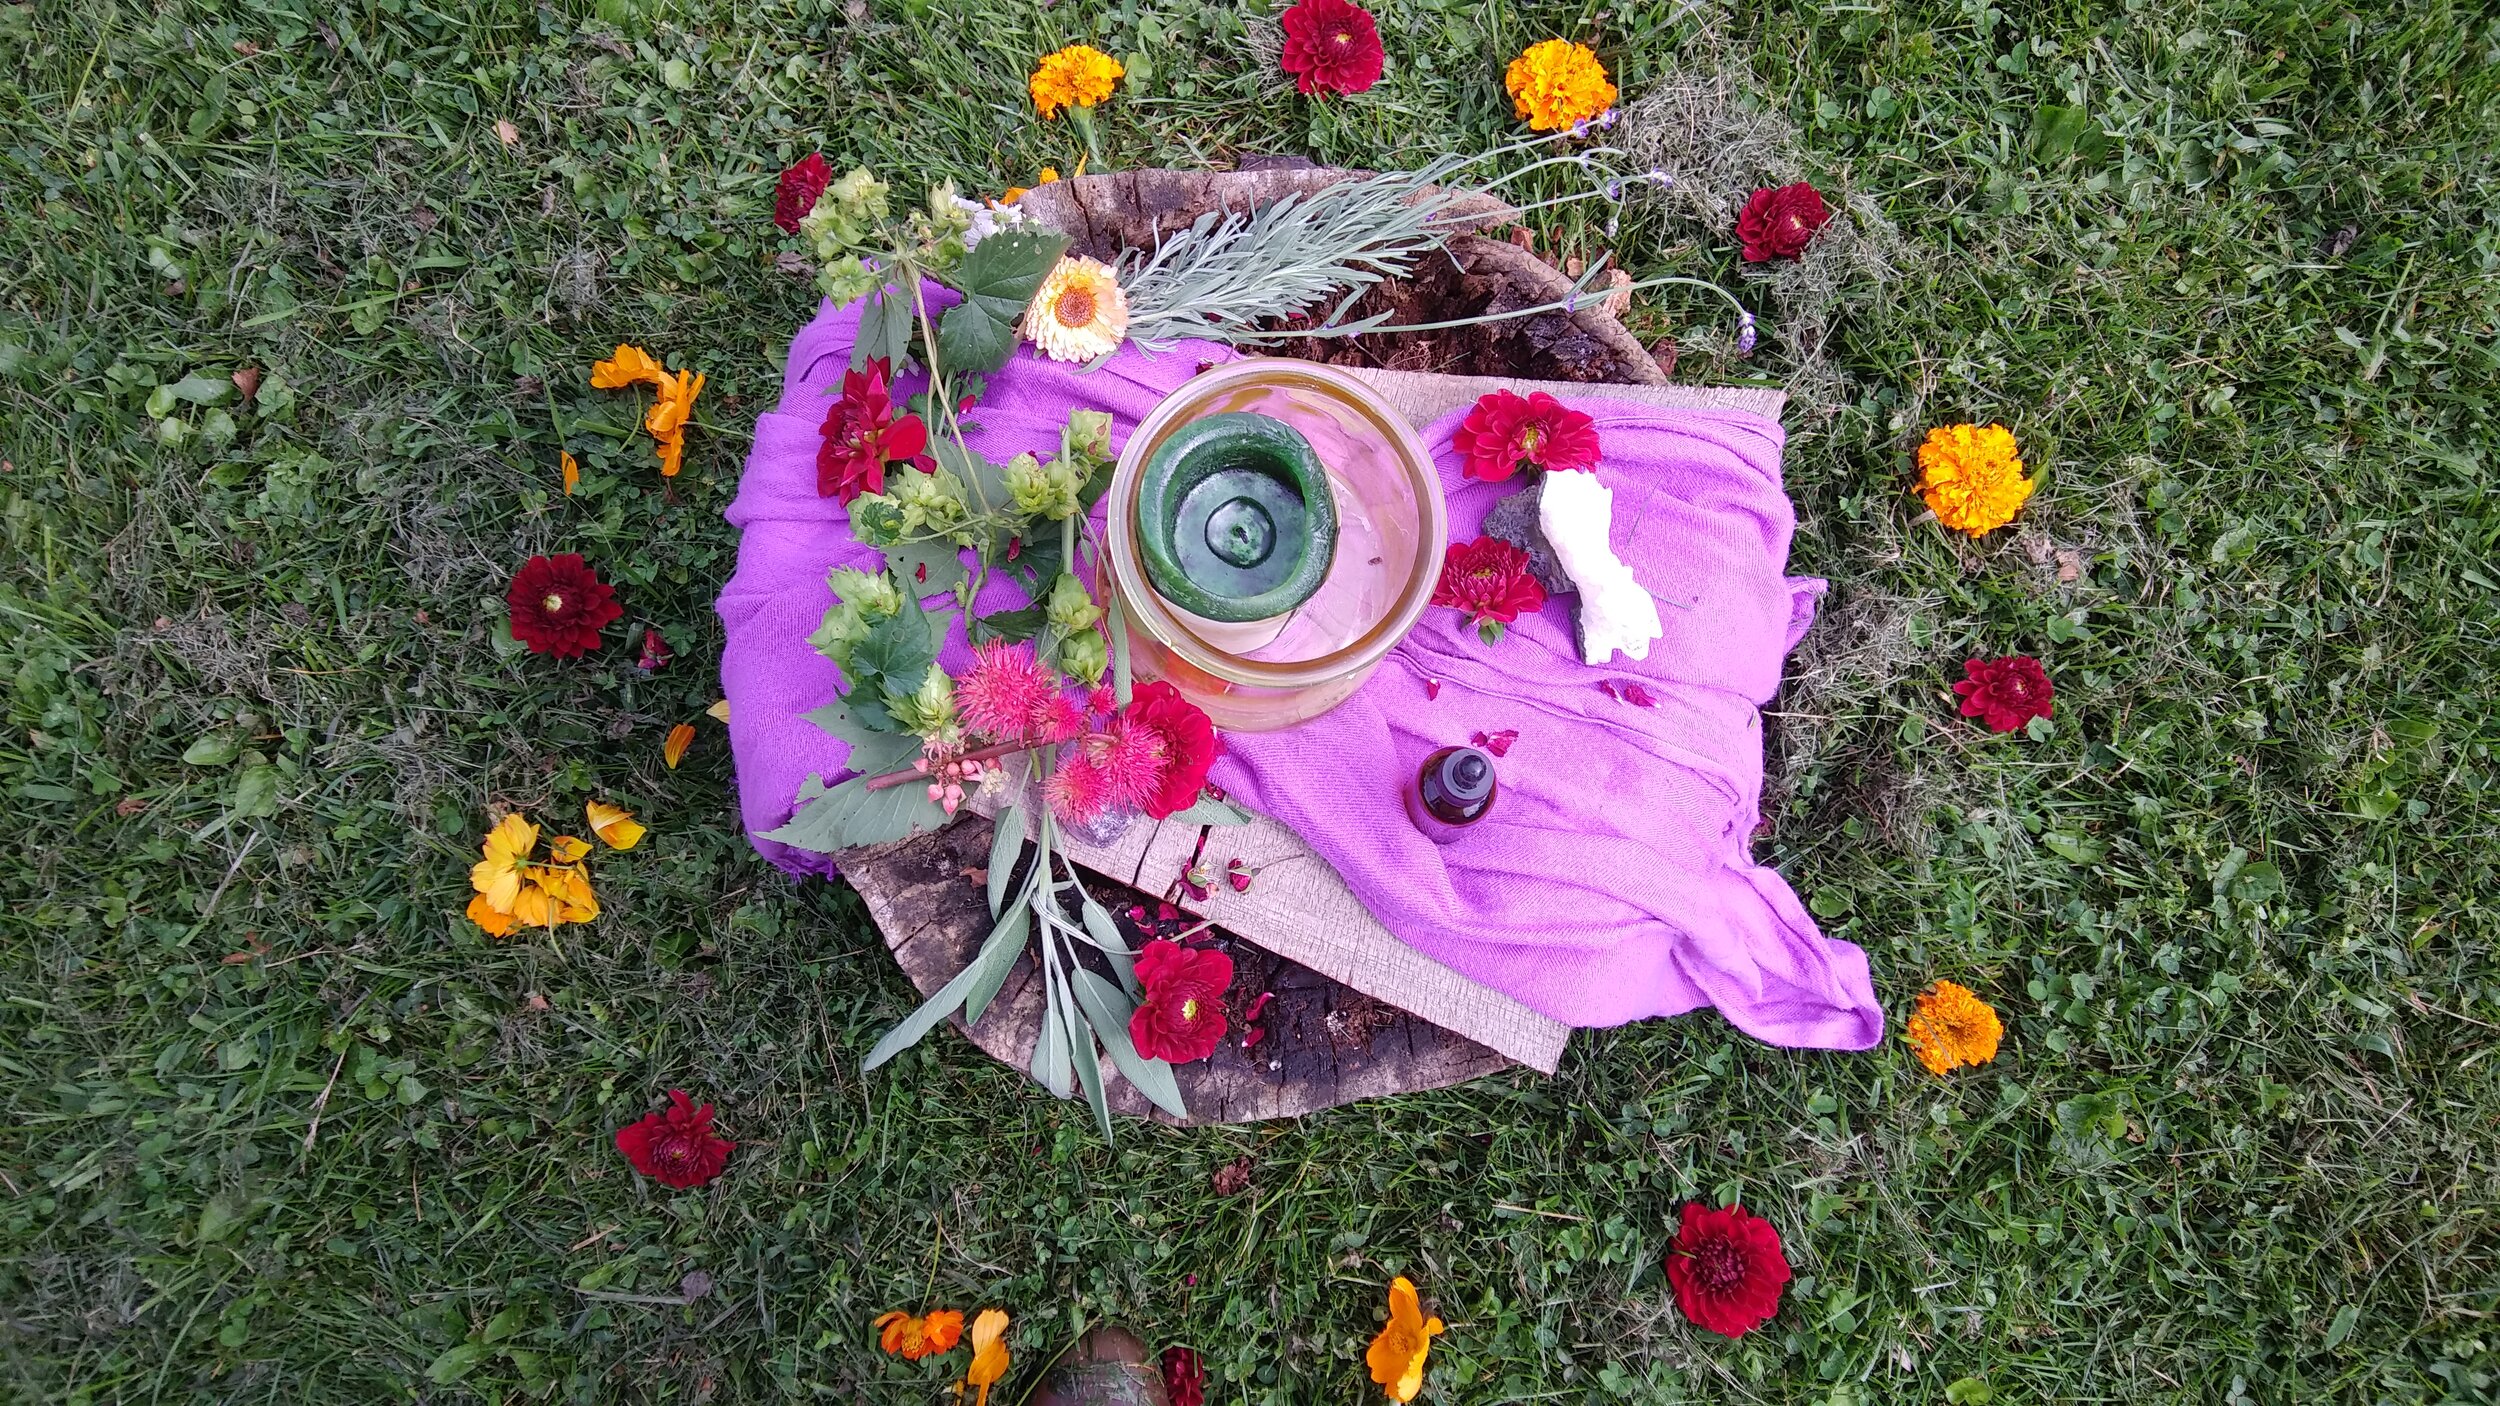 flower 'altar' for group meditation 8 - 25 - 19.jpg